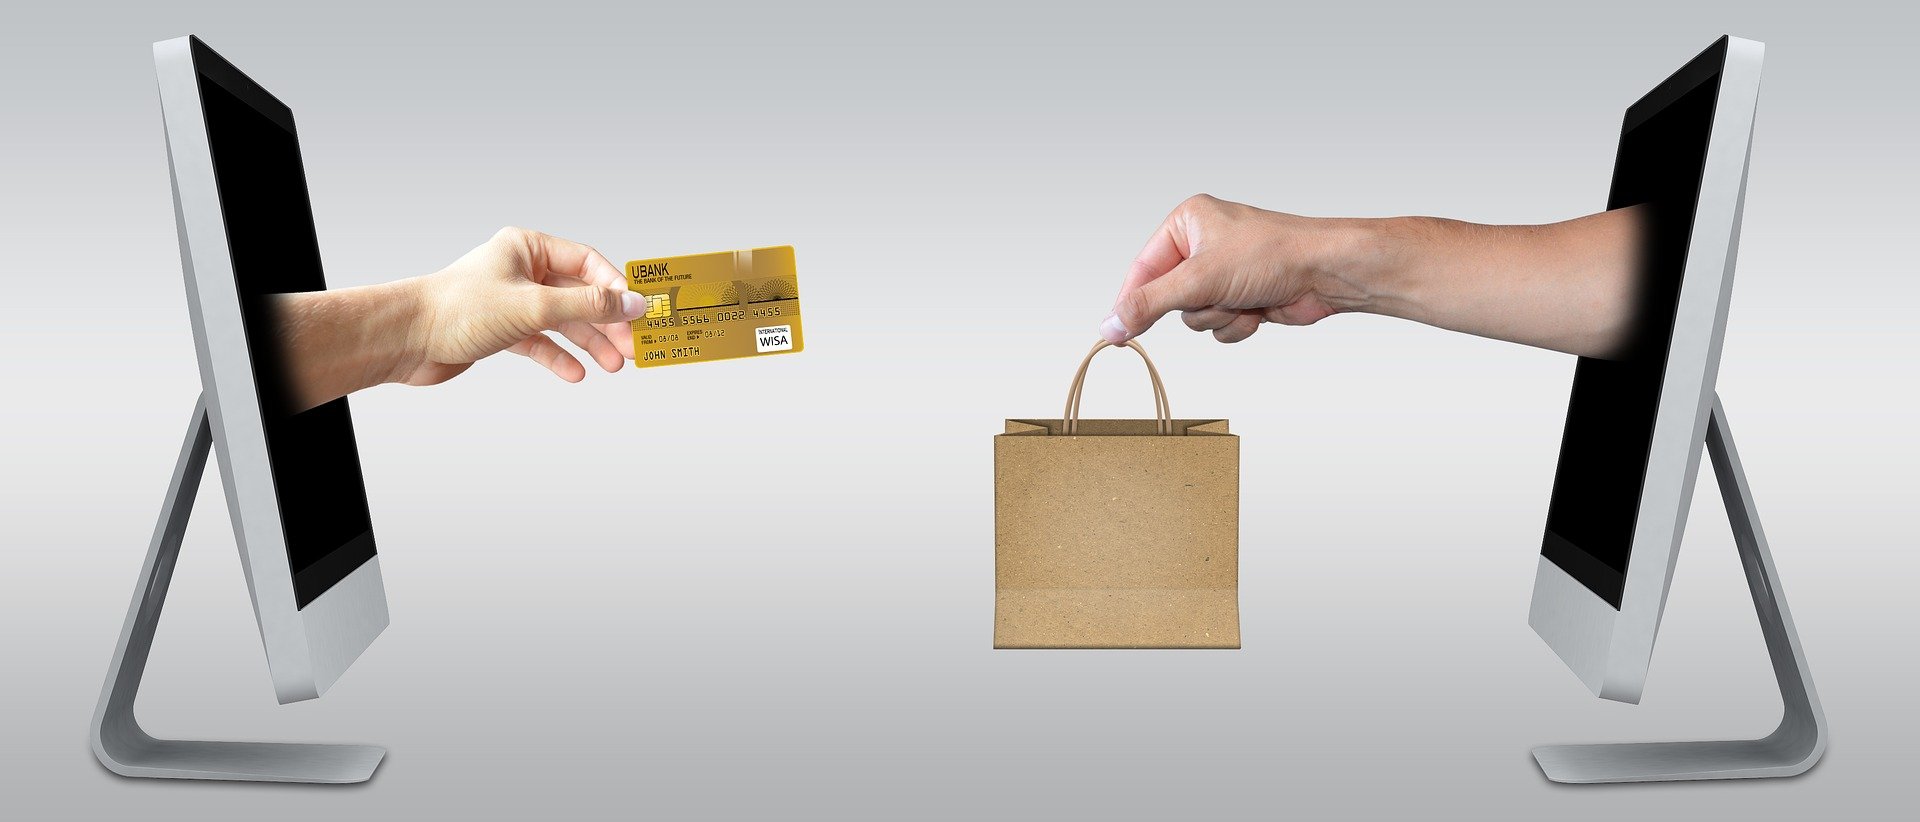 Utilización fraudulenta de tarjeta de crédito